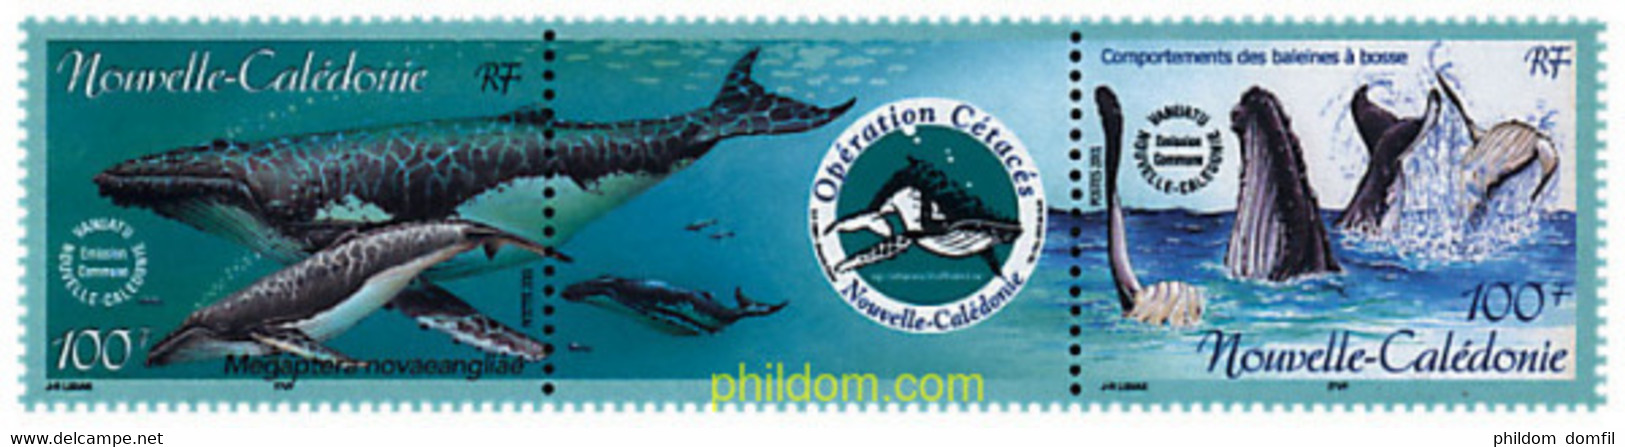 5405 MNH NUEVA CALEDONIA 2001 OPERACION CETACEOS - Gebraucht